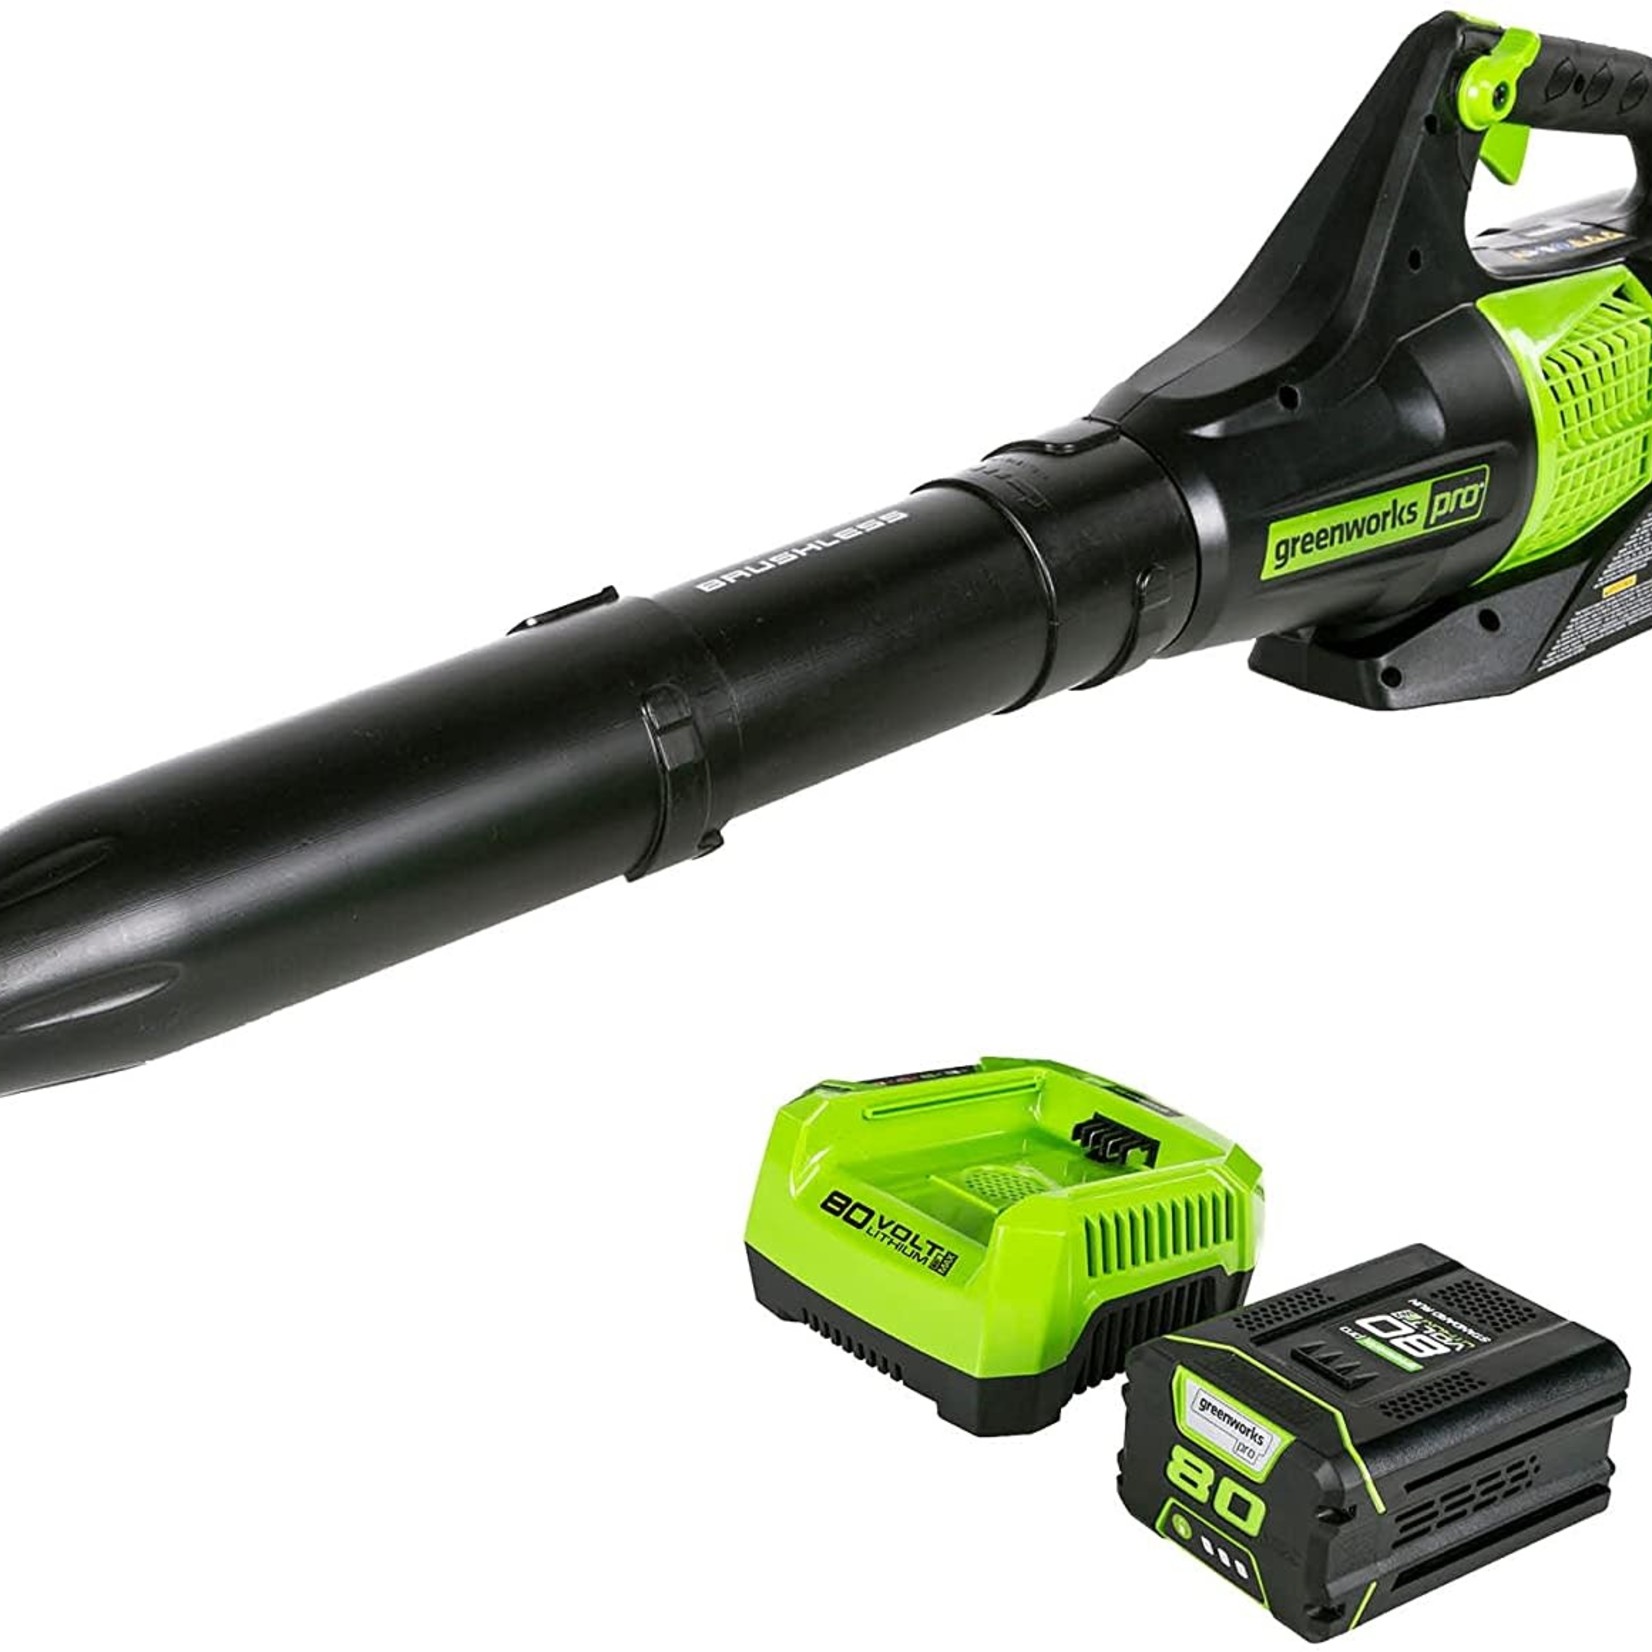 Greenworks PRO 80V Cordless Leaf Blower 145 MPH - 580 CFM, 2.5 Ah Battery Included